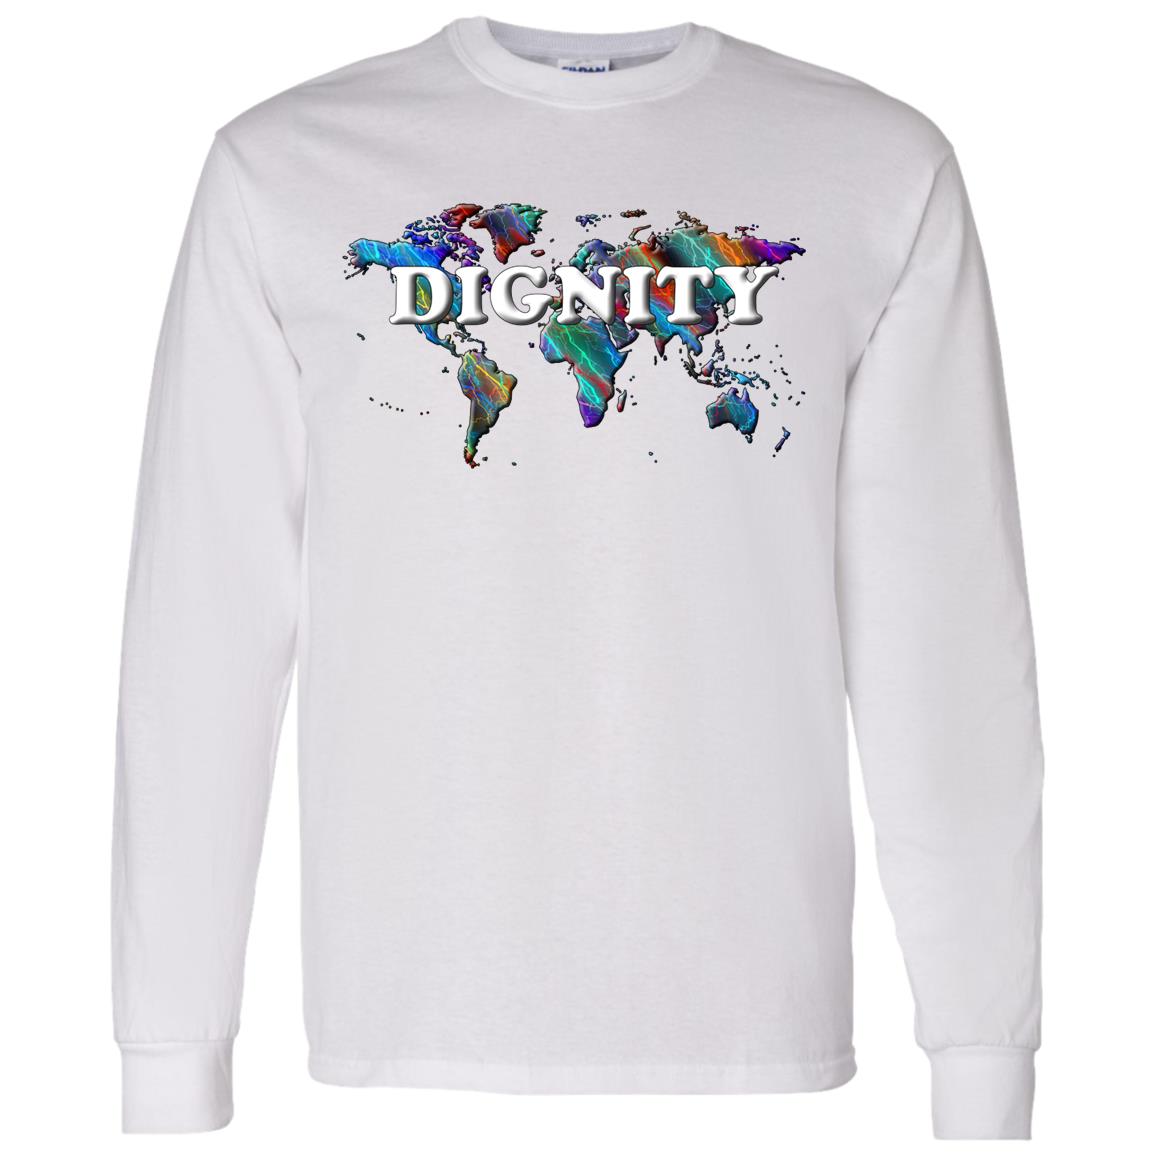 Dignity LS T-Shirt